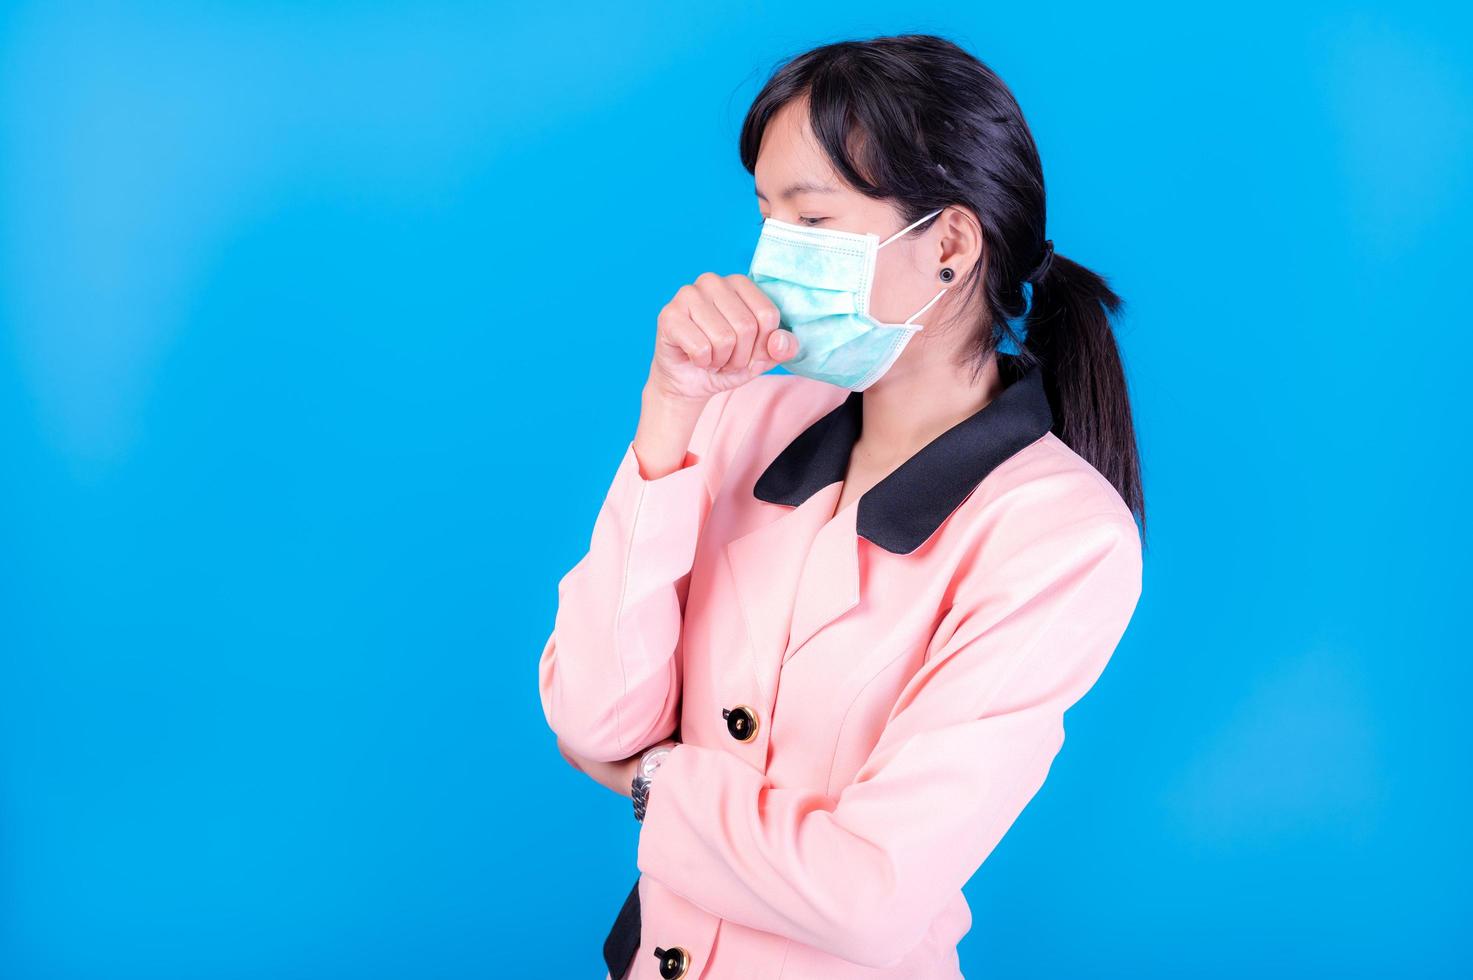 asiatische geschäftsfrauen müssen eine maske verwenden, um das gesicht zu bedecken, um eine verschmutzung durch staub zu vermeiden foto